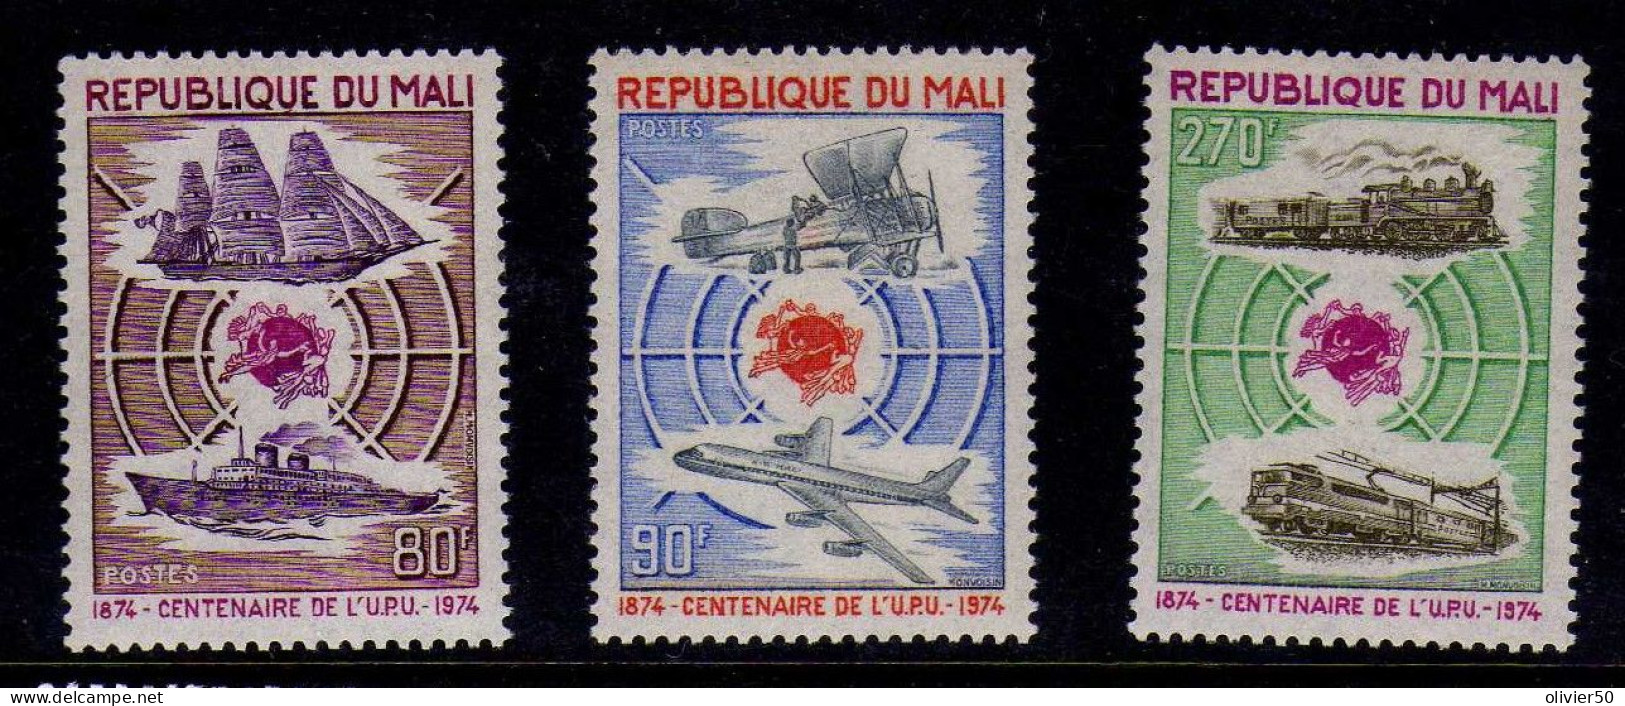 Mali - 1974 - Centenaire De L'UPU - Neufs** - MNH - Mali (1959-...)